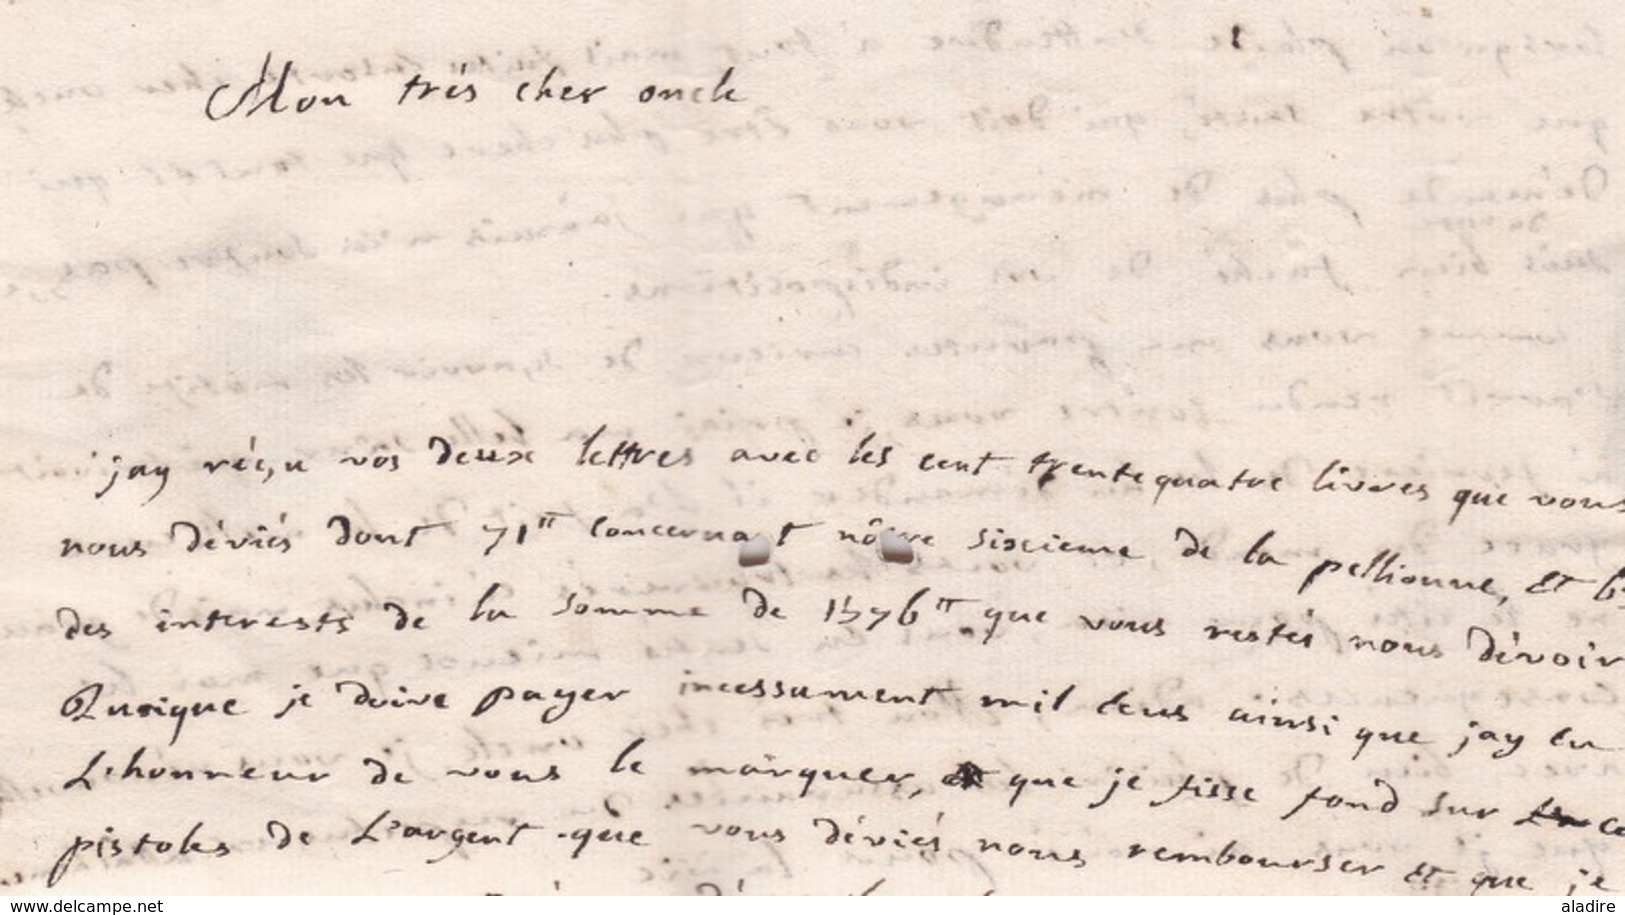 1774 - Marque Postale De Pont Saint Esprit, Gard Sur LAC Familiale De 2 Pages Vers Avignon, Vaucluse - 1701-1800: Precursores XVIII